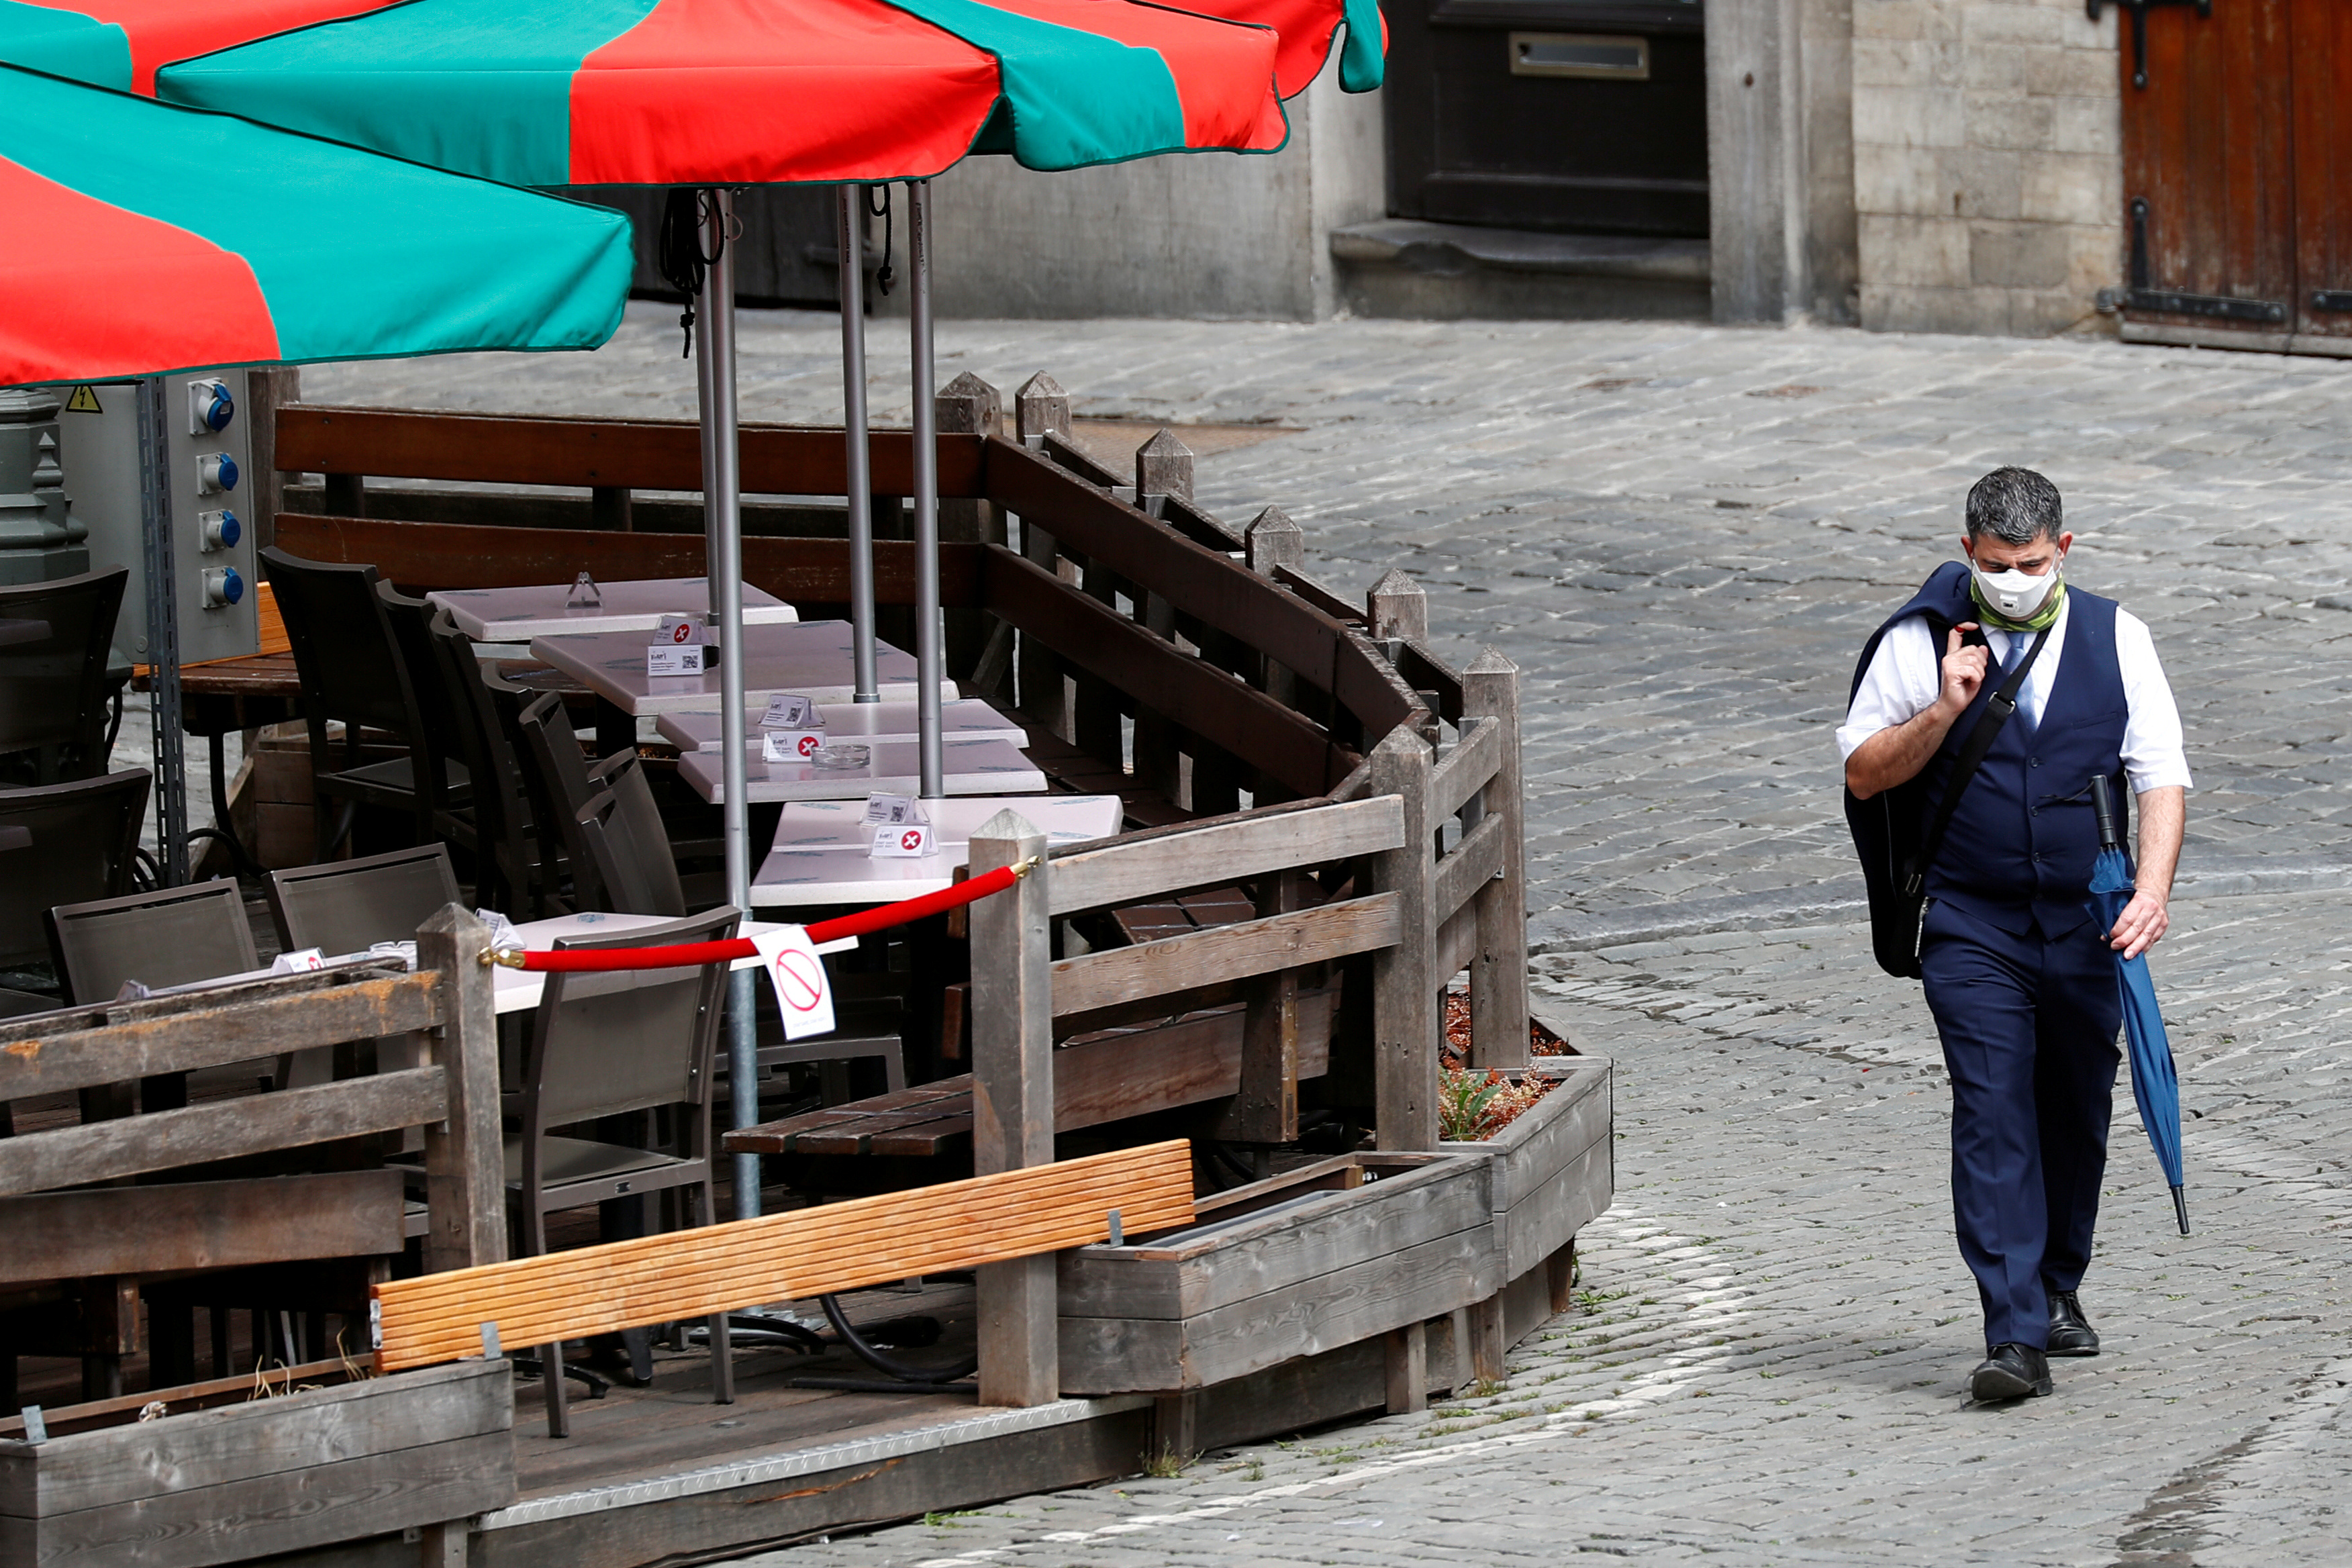 Bruselas hace obligatorio el uso de mascarillas en todos los espacios públicos